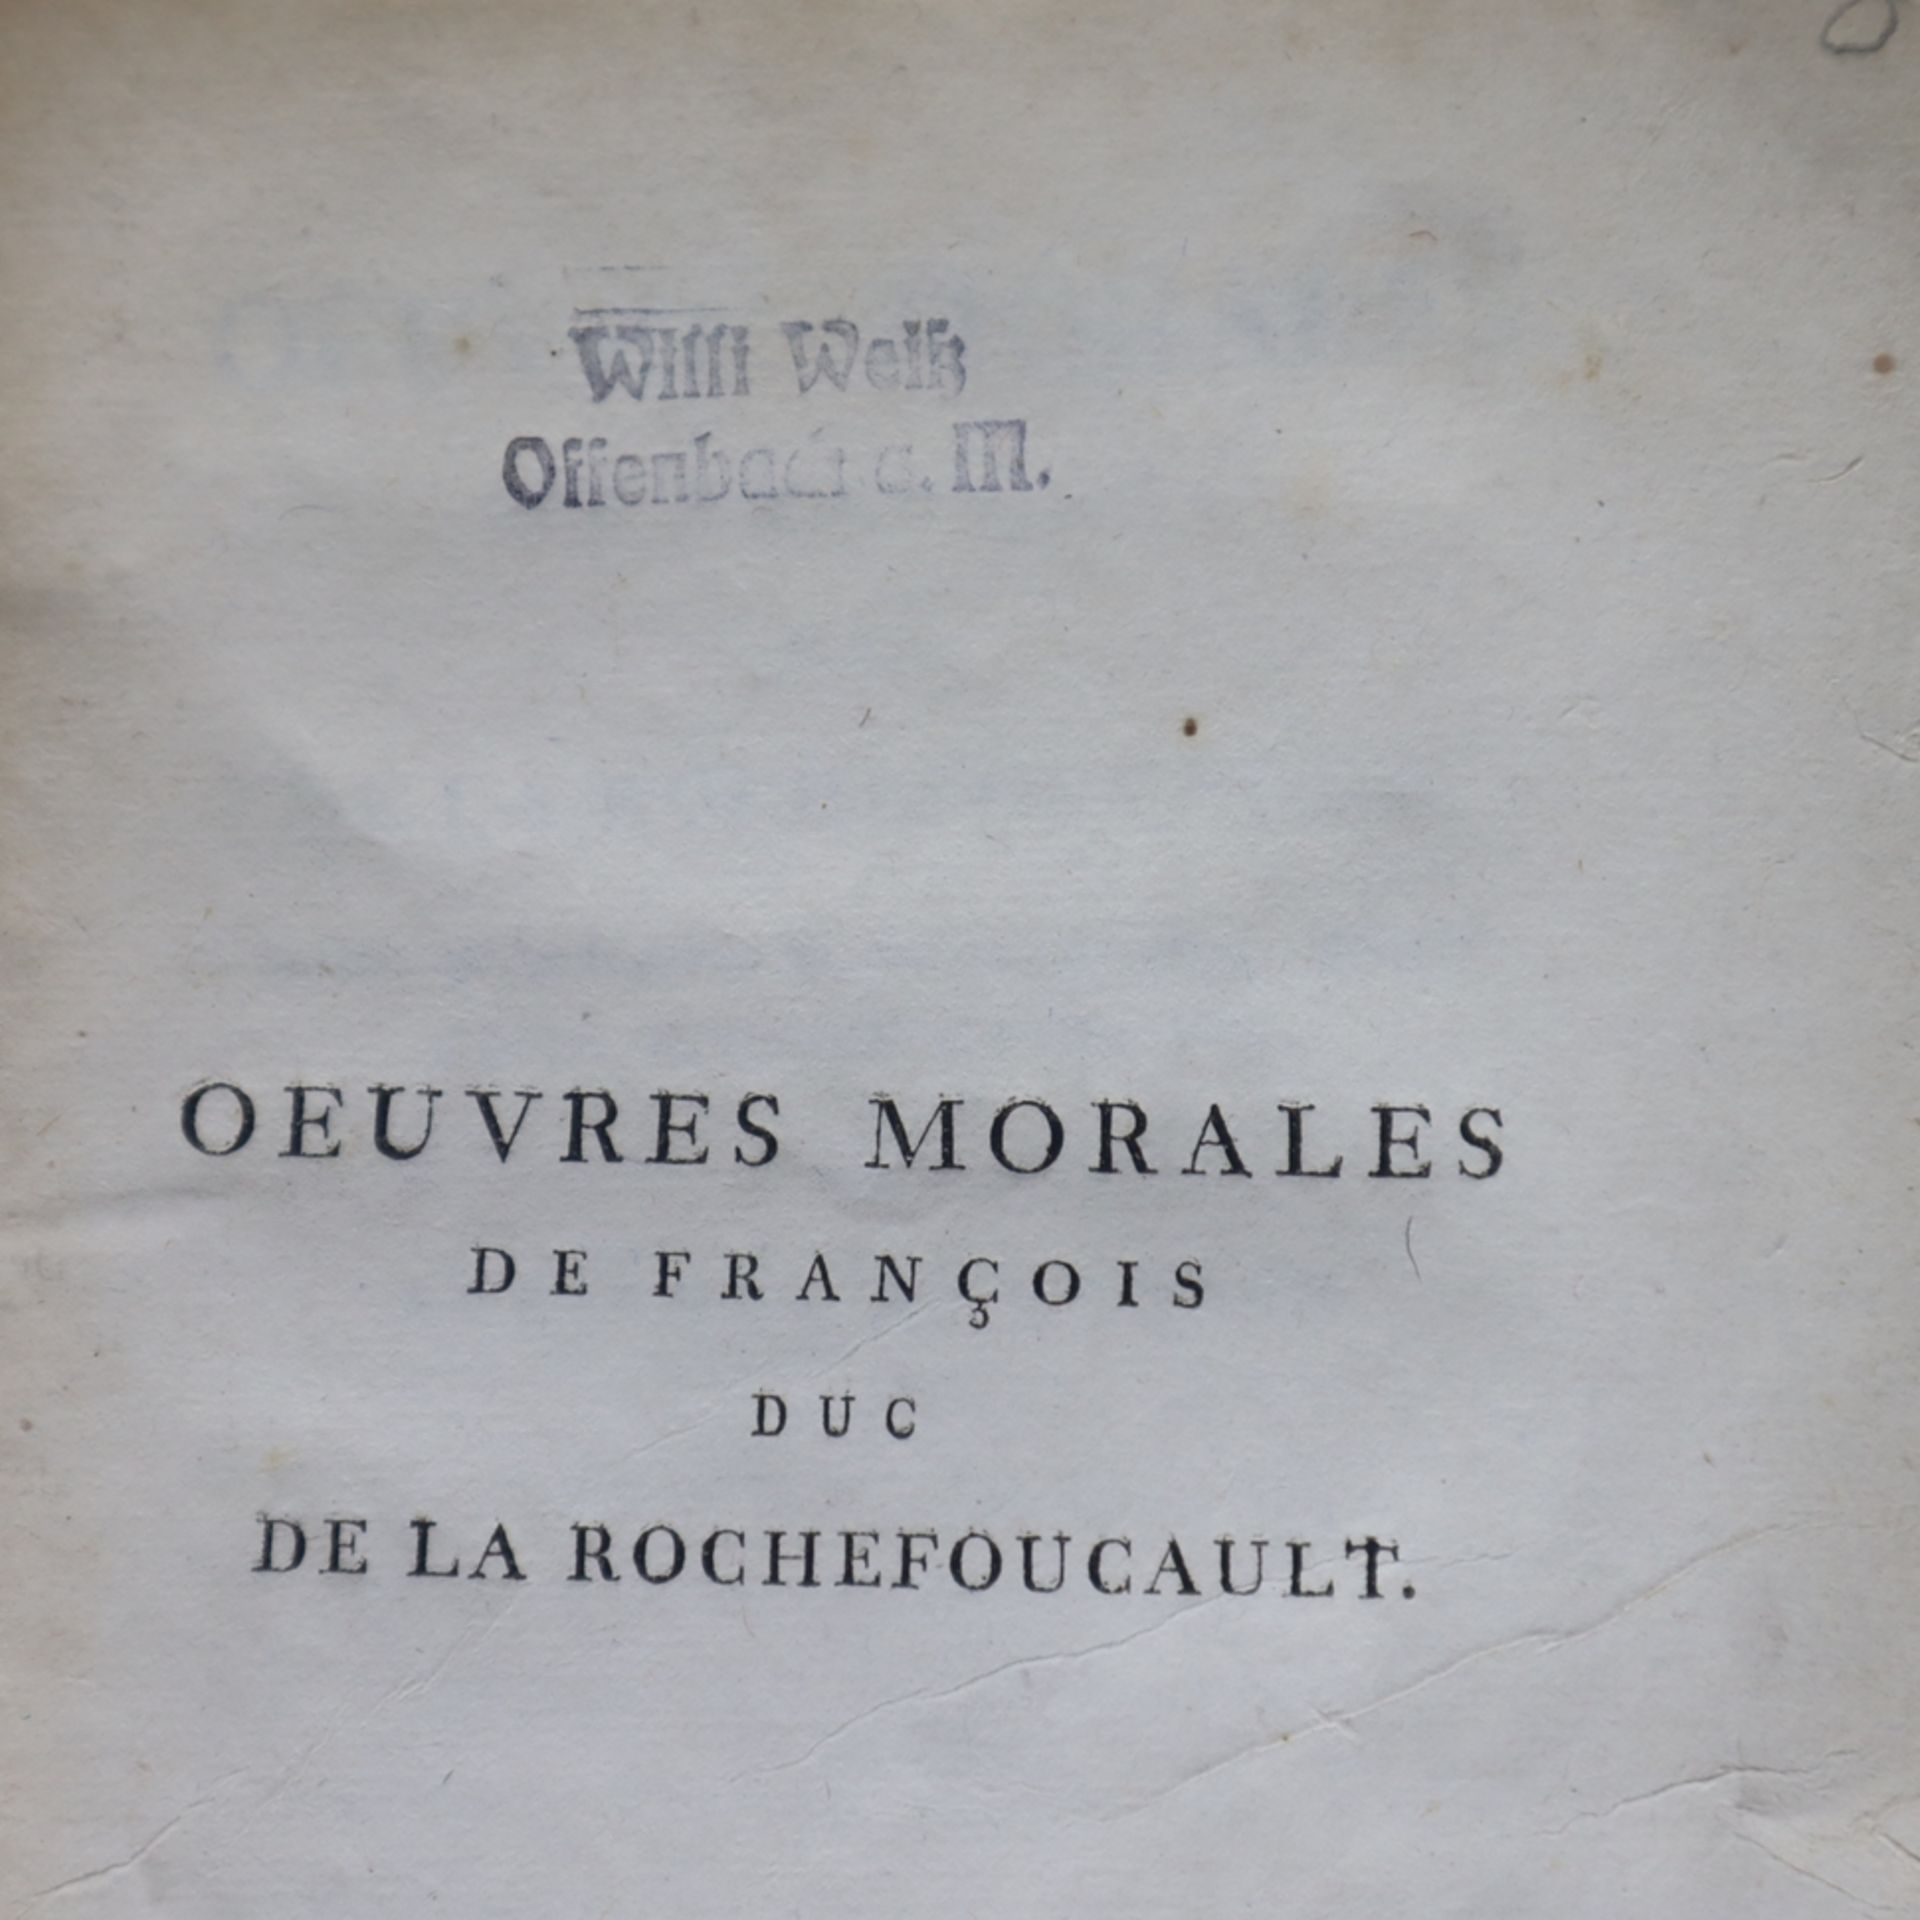 La Rochefoucault, François duc de - "OEUVRES MORALES de François duc de La Rochefoucault", J. Decke